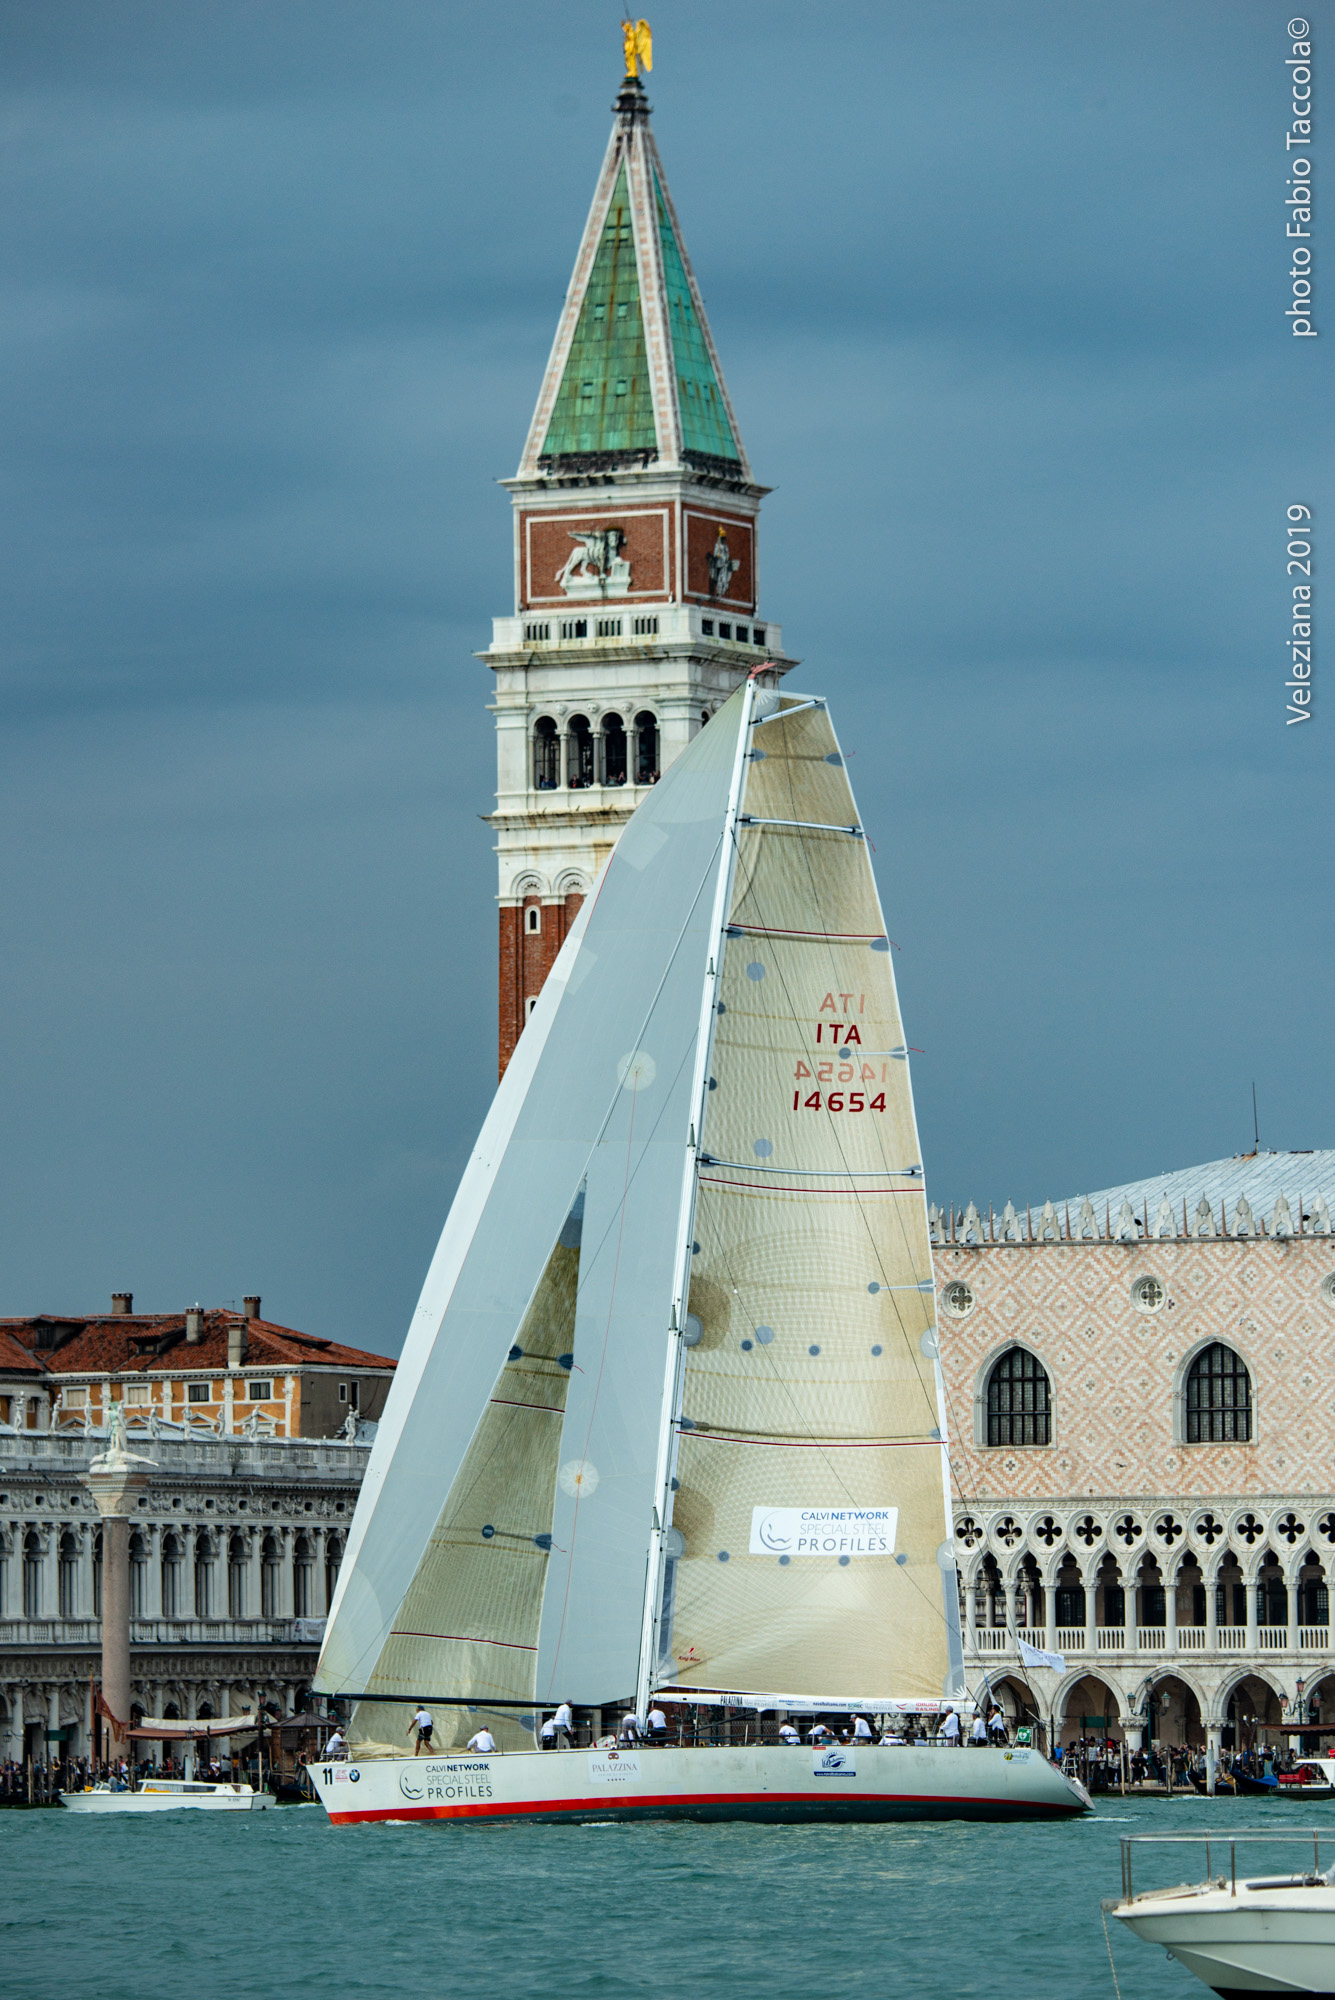 A Venezia il circolo della vela di Brindisi sul podio con Idrusa, ambasciatrice della Brindisi-Corfù